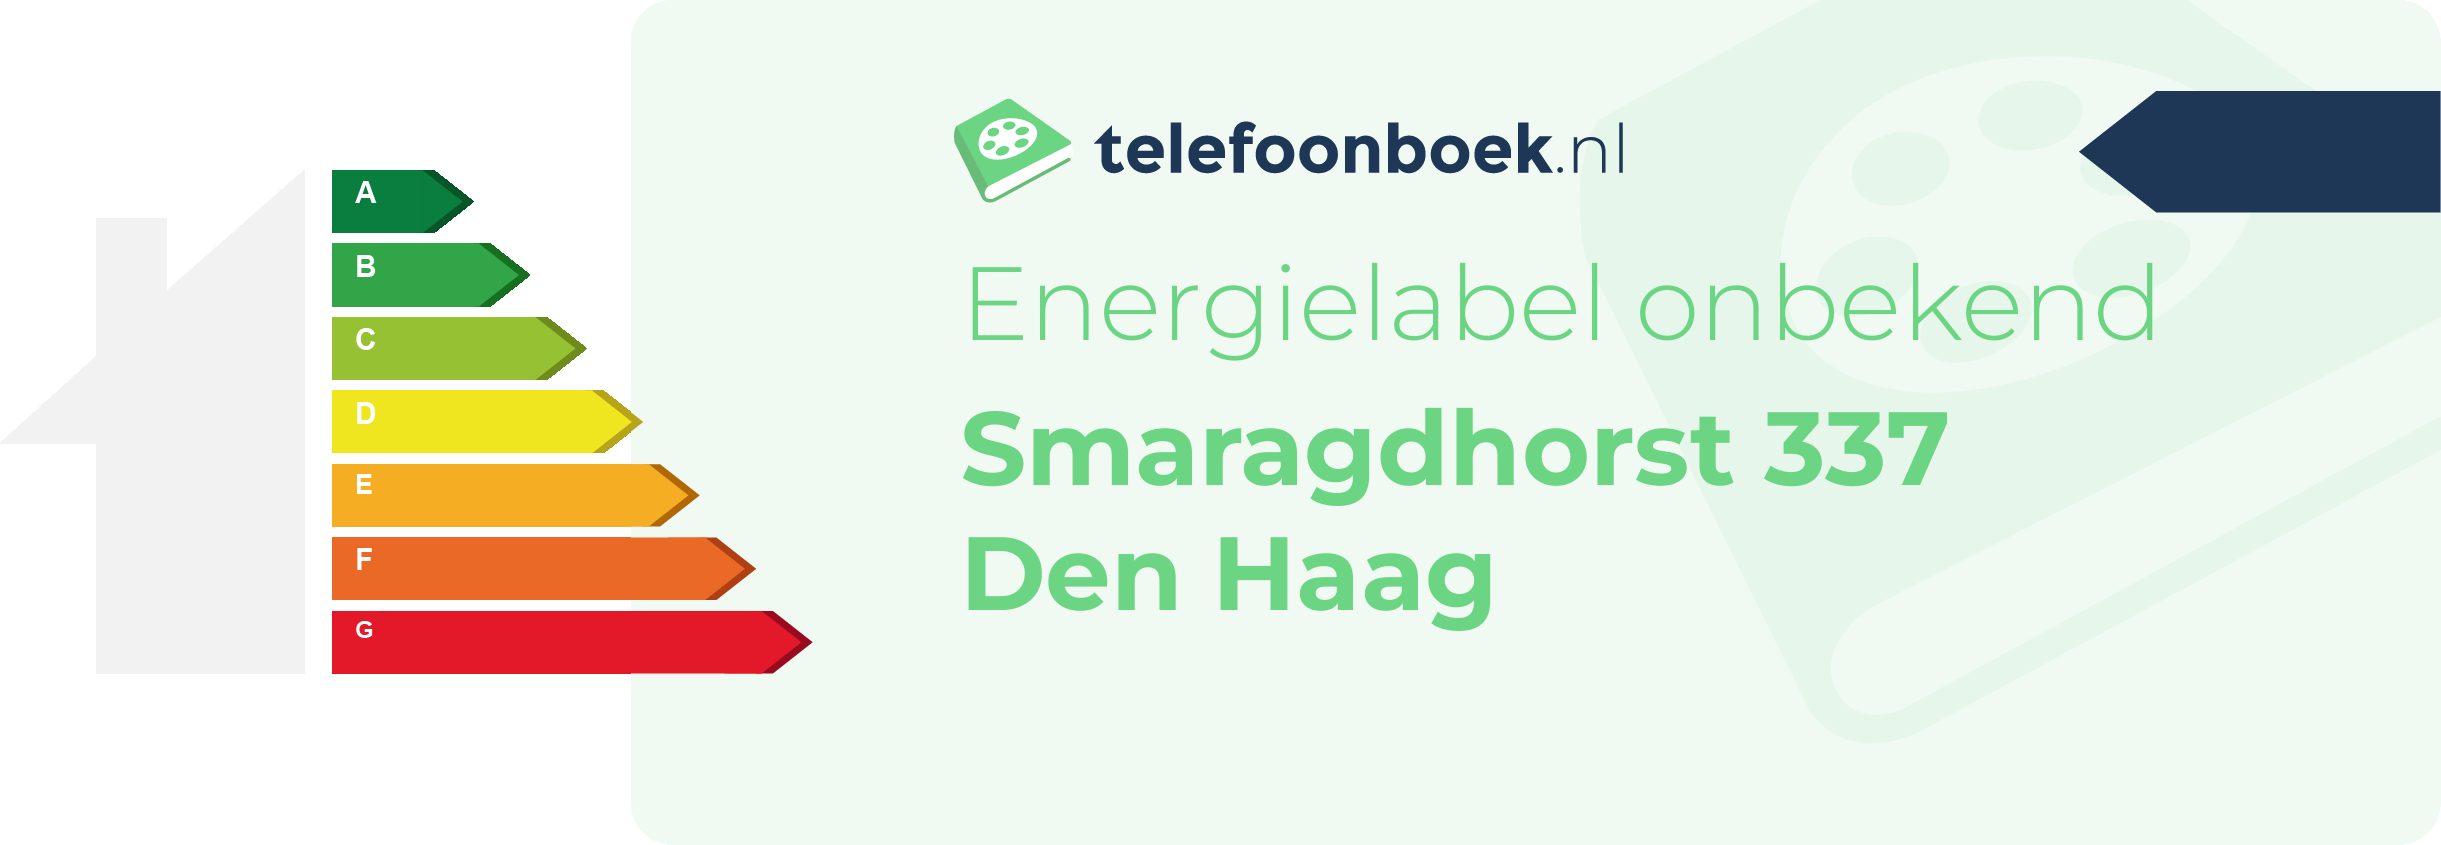 Energielabel Smaragdhorst 337 Den Haag